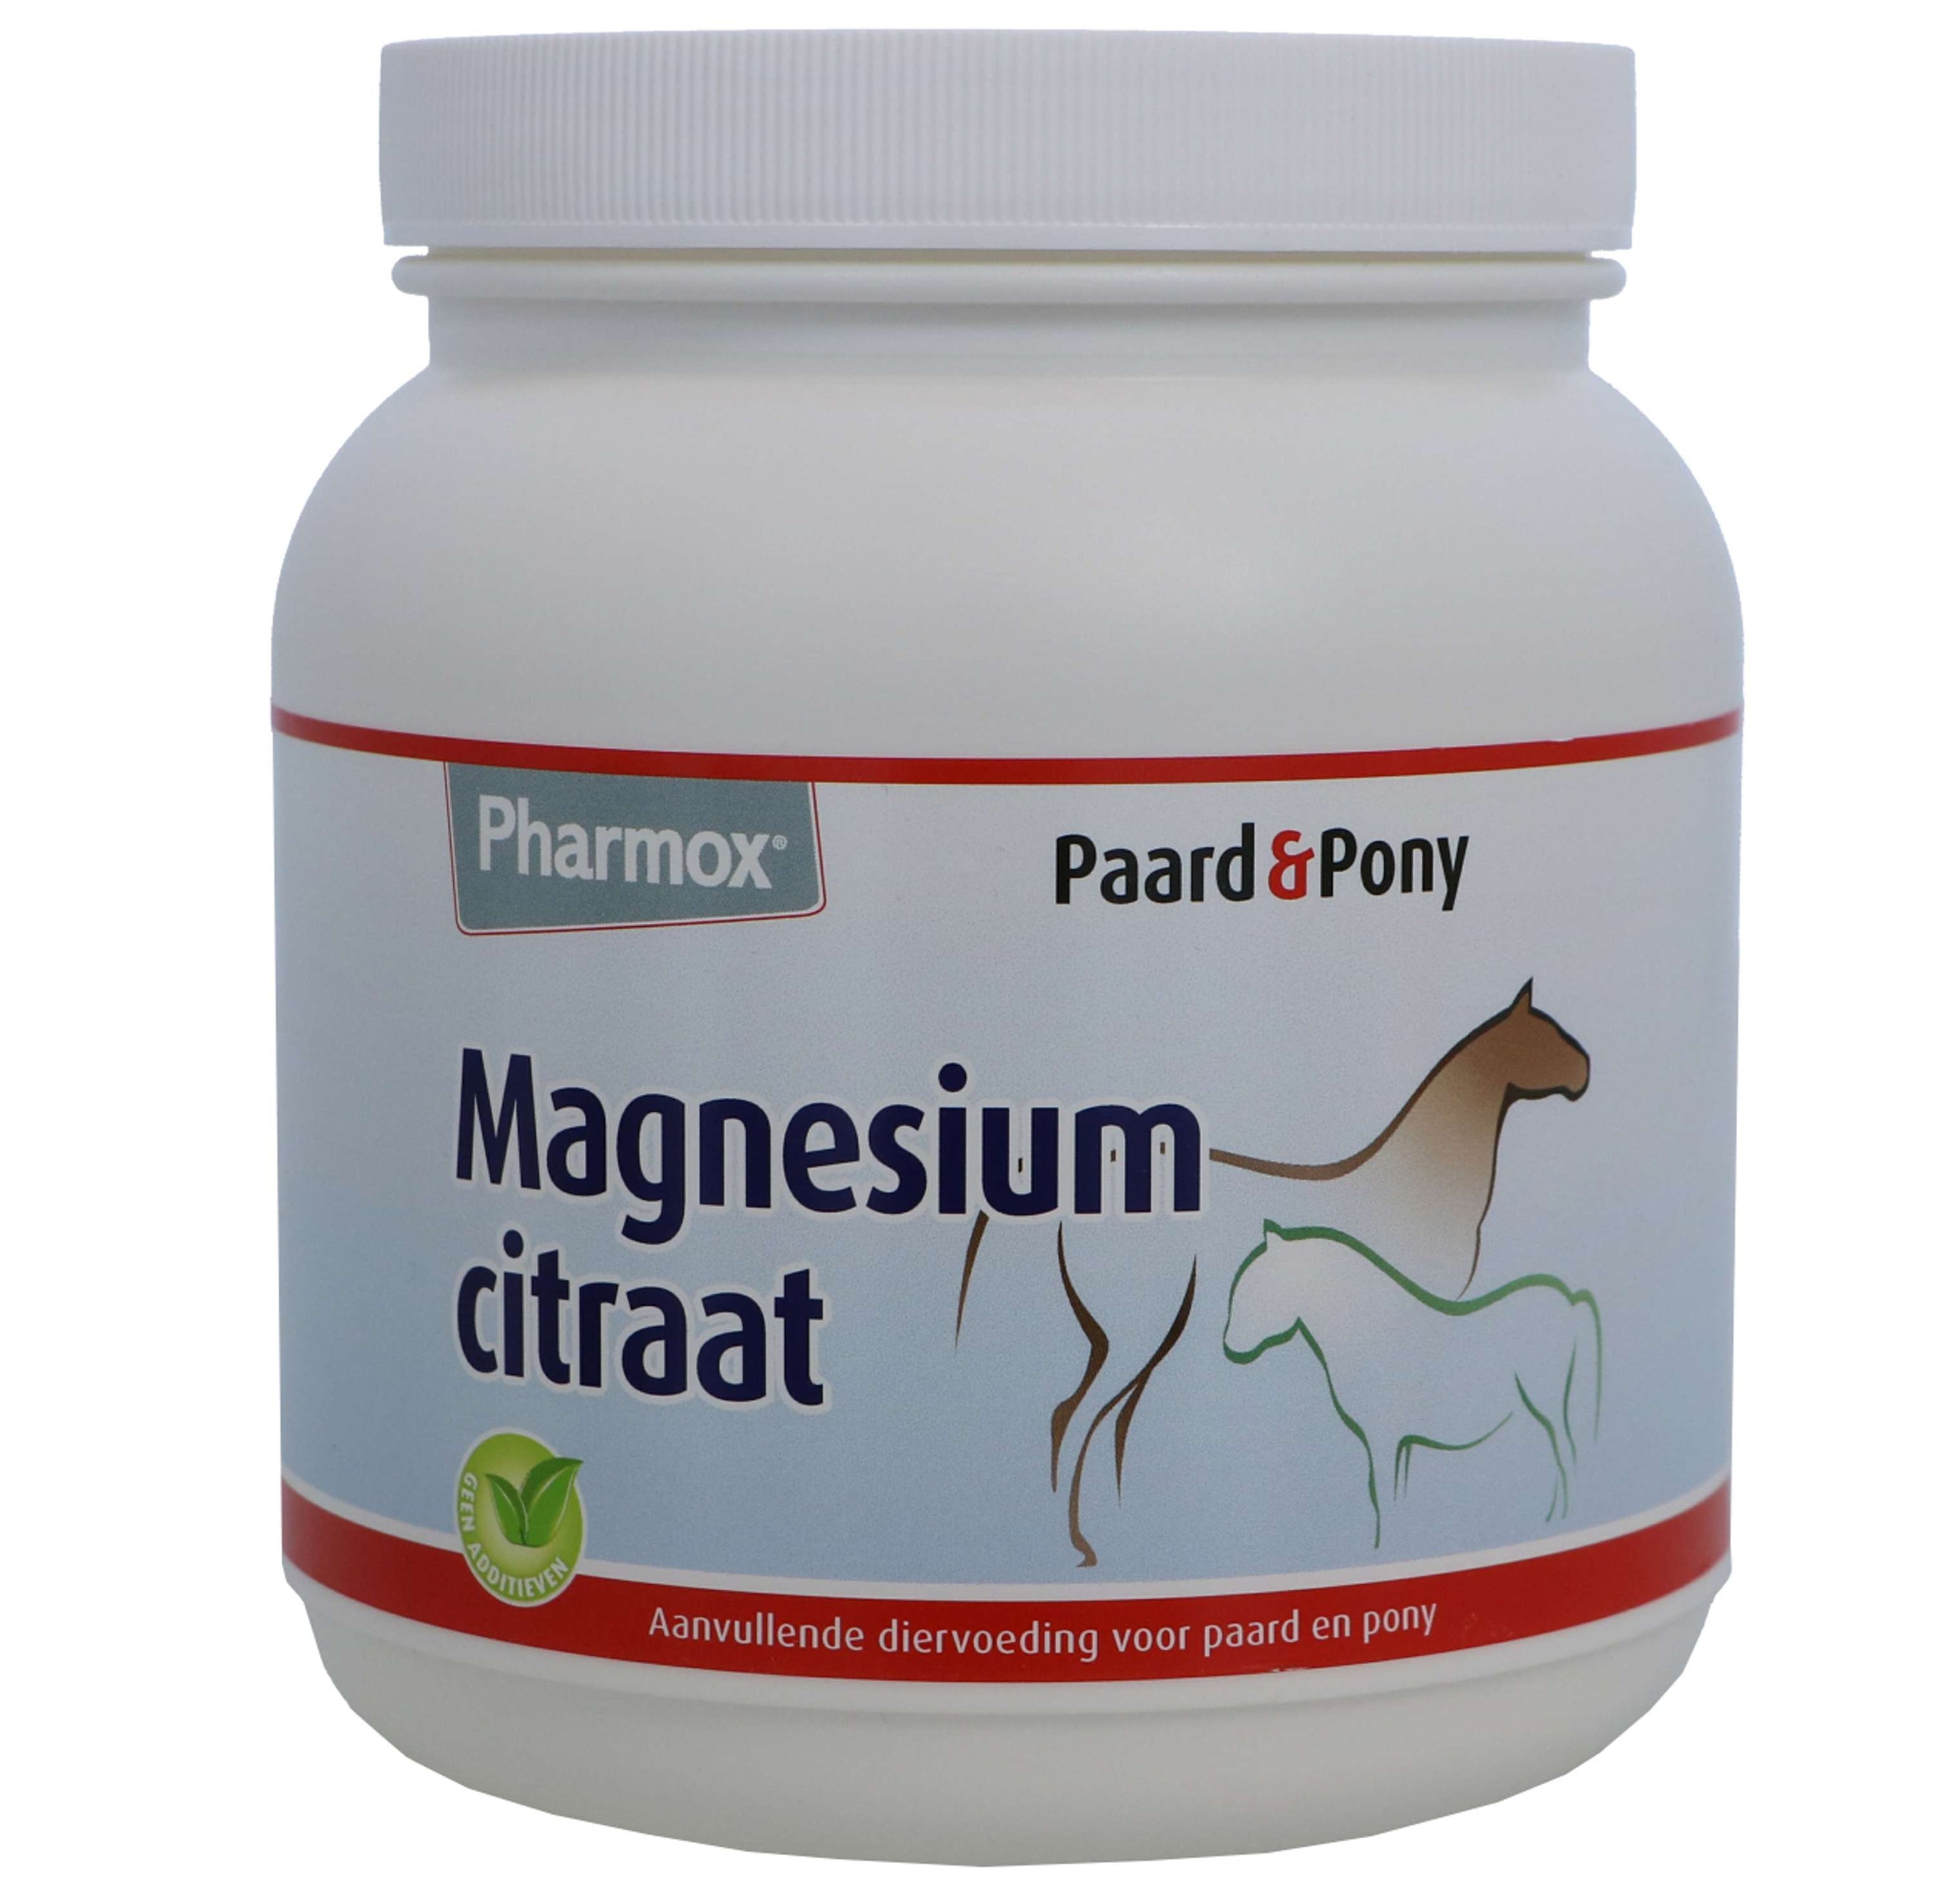 Pharmox Citrate de Magnésium P&P